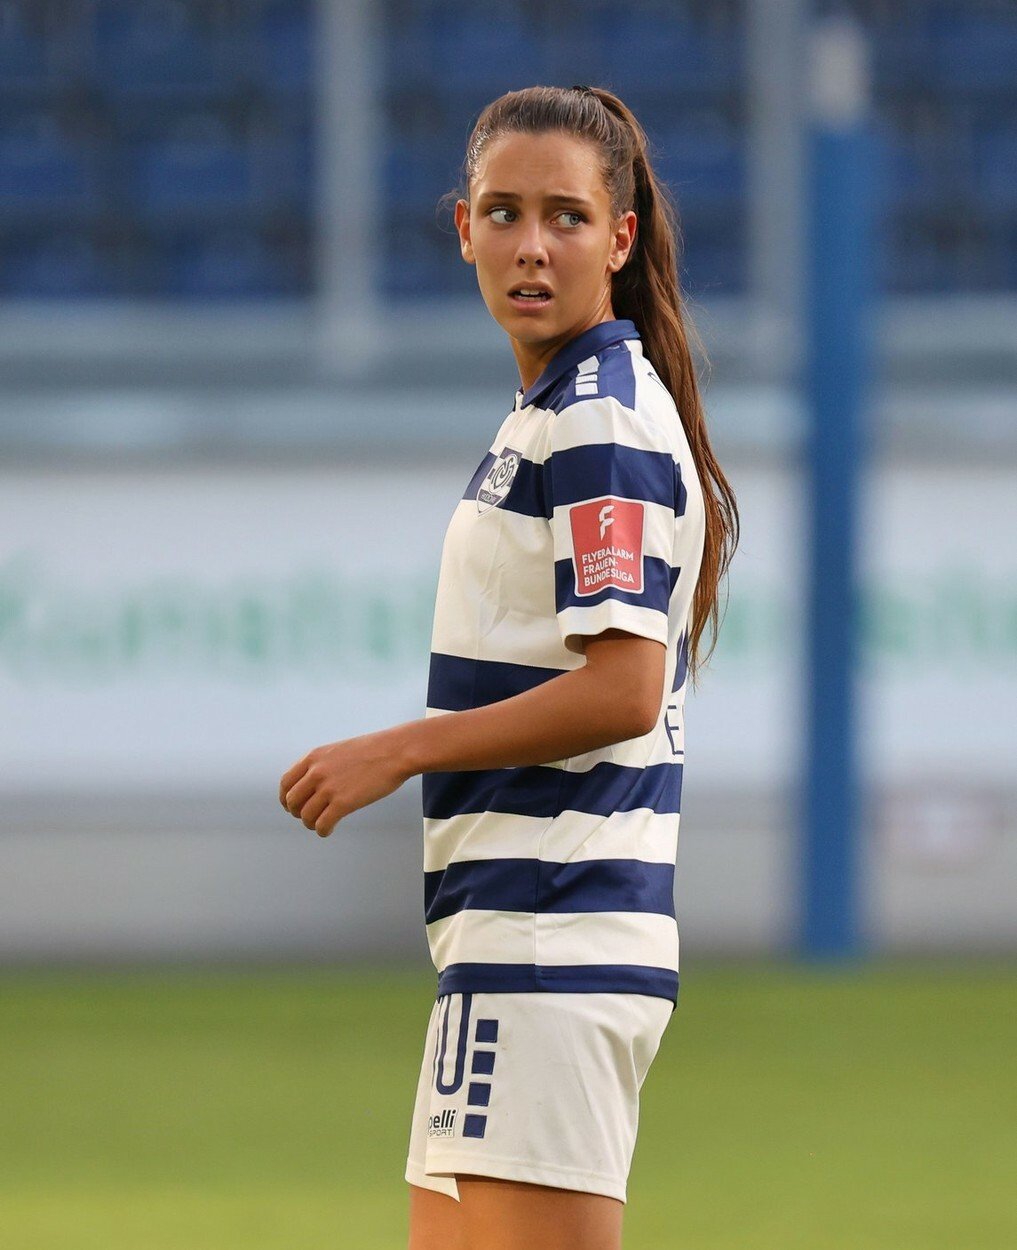 V mládežnické kategorii ženského fotbalového celku MSV Duisburg došlo k tragédii